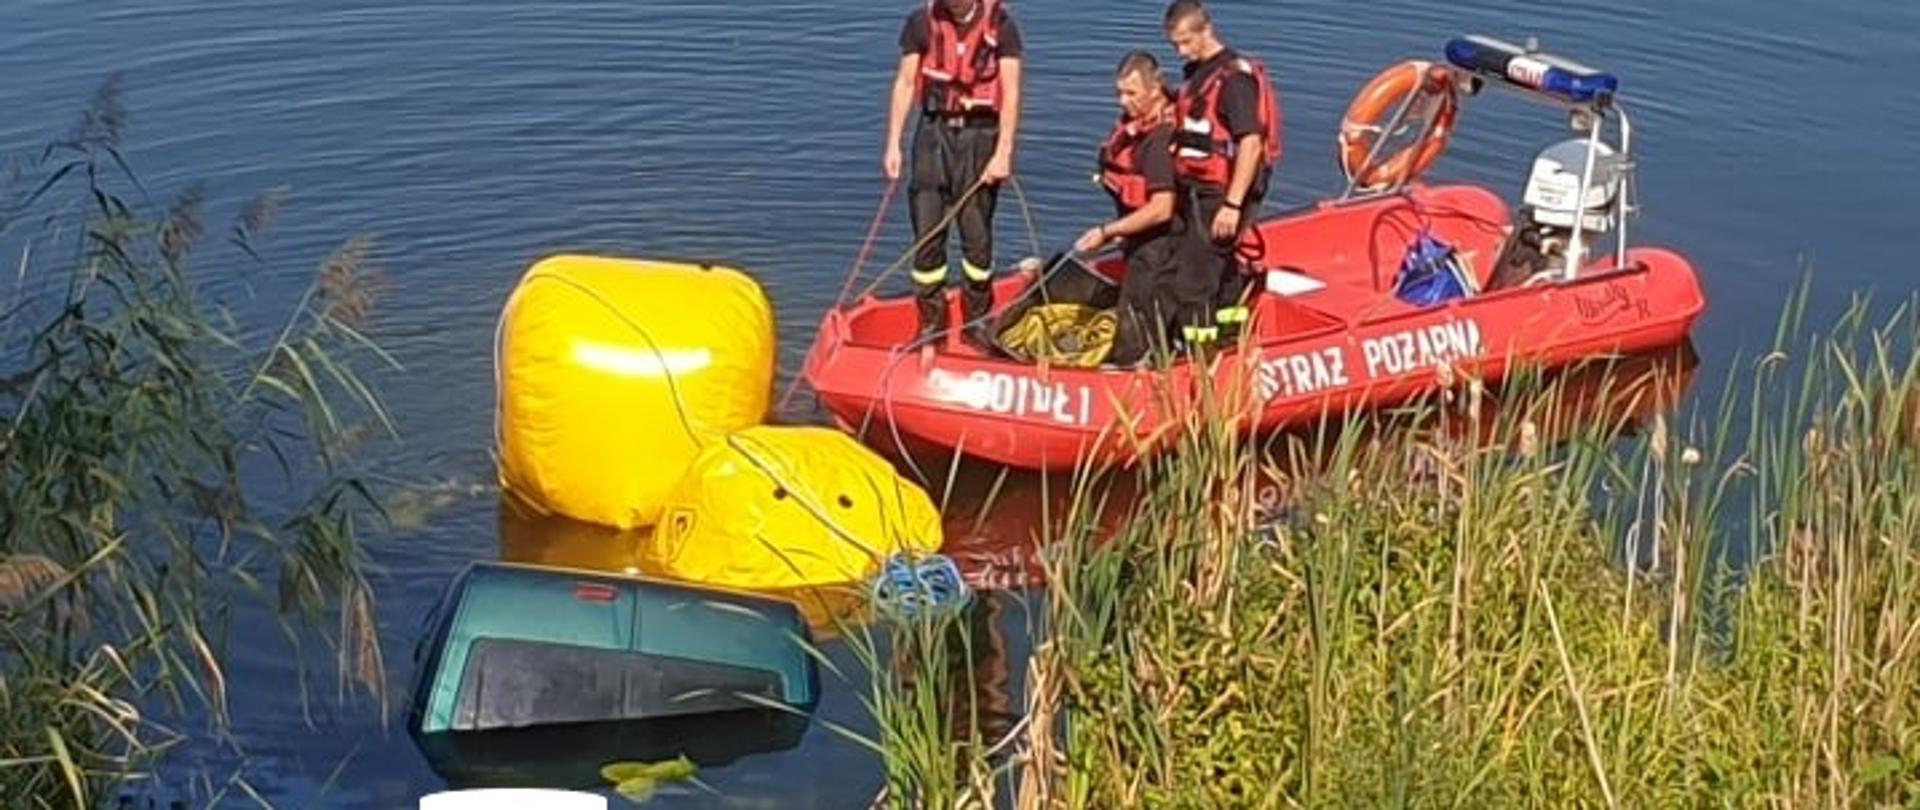 Zdjęcie przedstawia wynurzający się z otchłani stawu samochód osobowy do którego przymocowane są dwa balony wypornościowe oraz łódź motorową ze strażakami